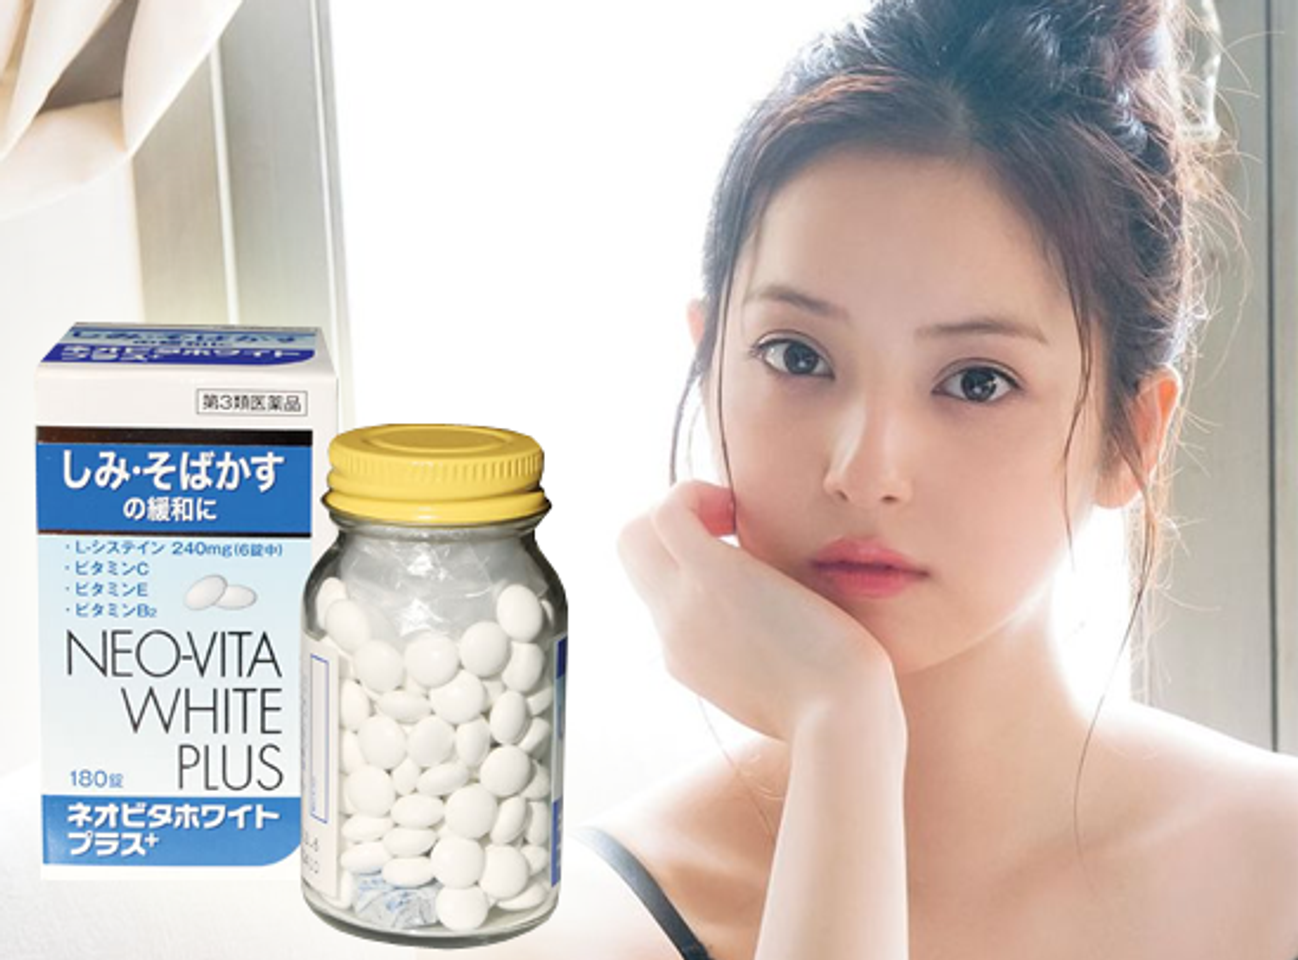 Neo Vita White Plus làm trắng da, điều trị nám và tàn nhang_chiaki.vn